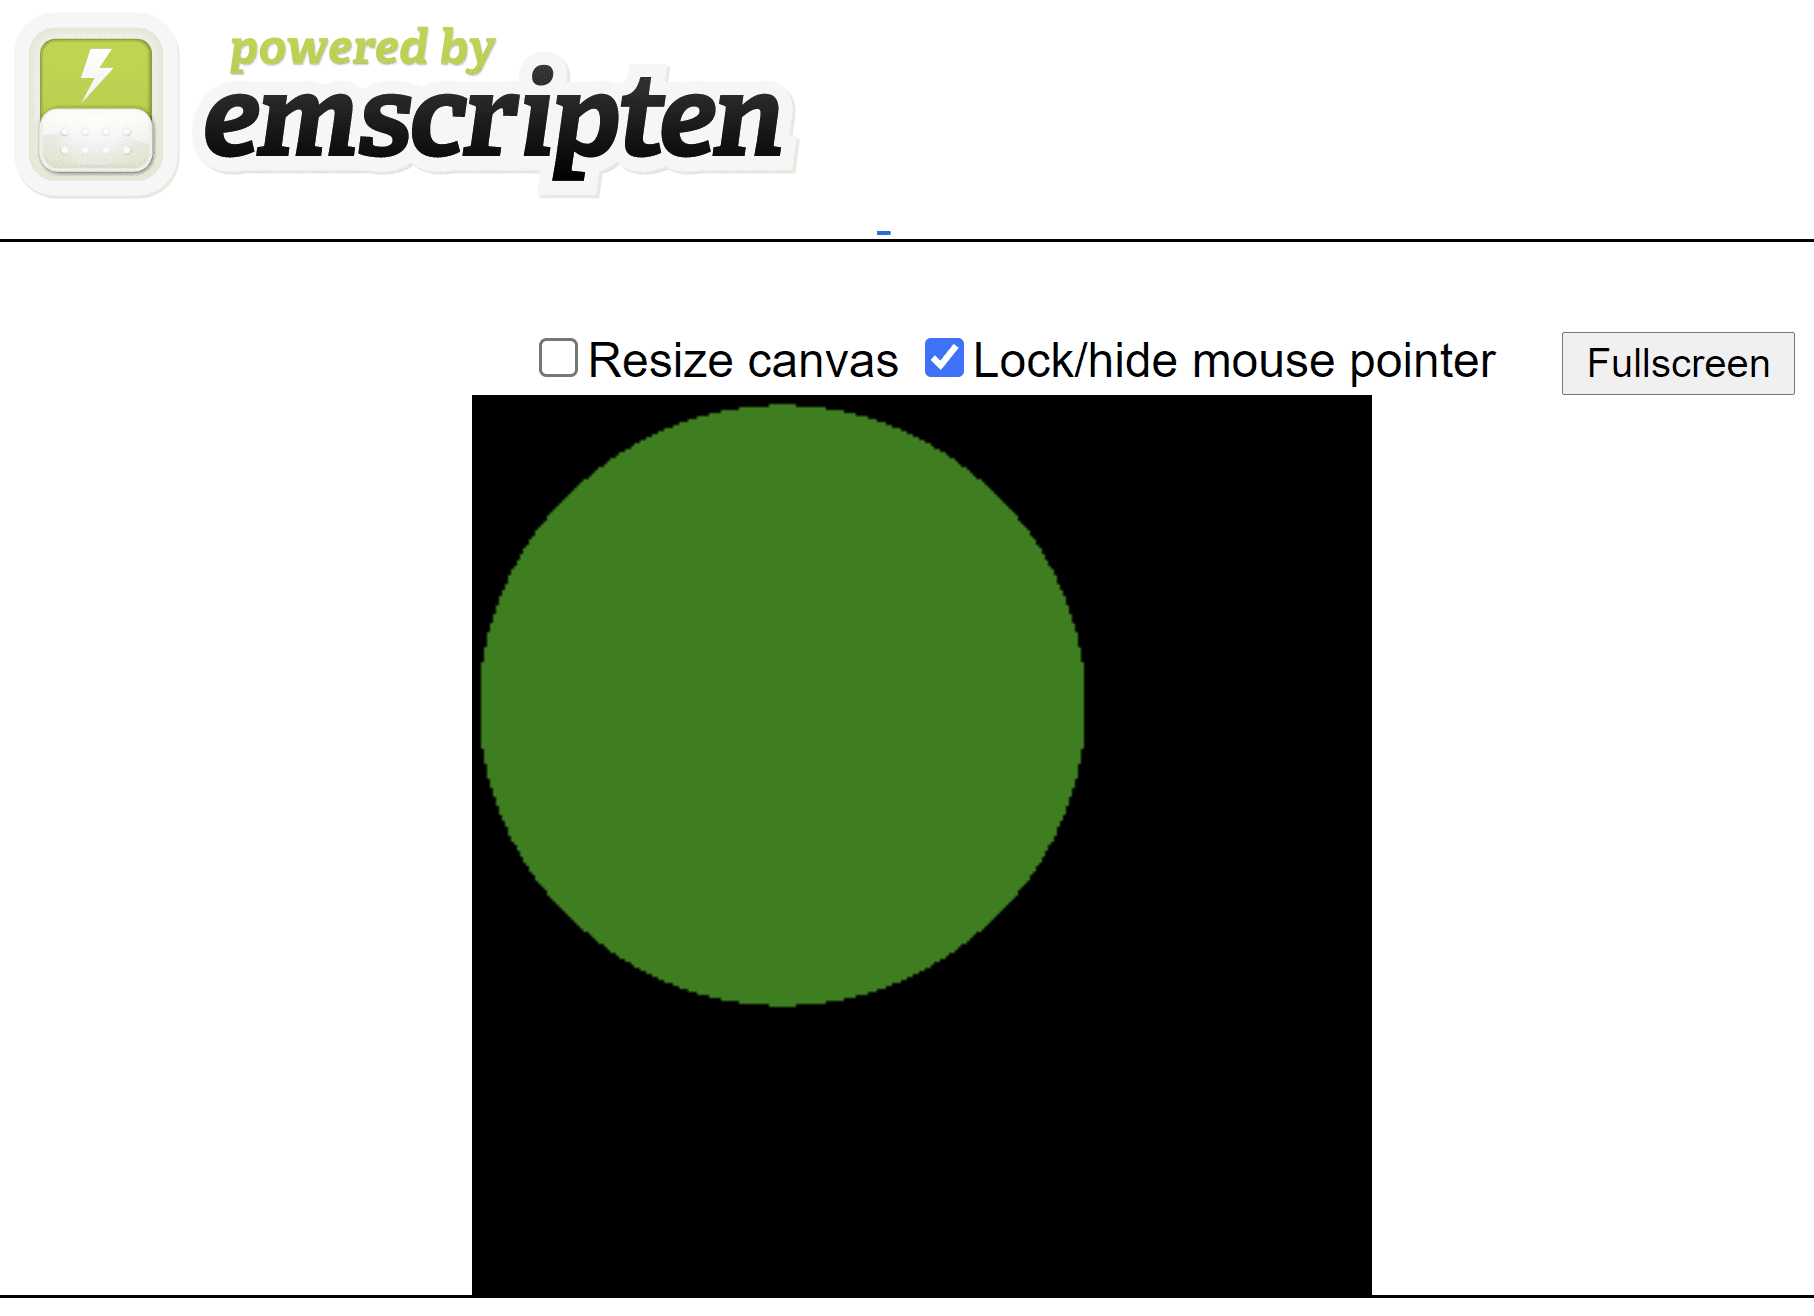 หน้า HTML ที่สร้างโดย Emscript ซึ่งแสดงวงกลมสีเขียวบนผืนผ้าใบสี่เหลี่ยมจัตุรัสสีดำ